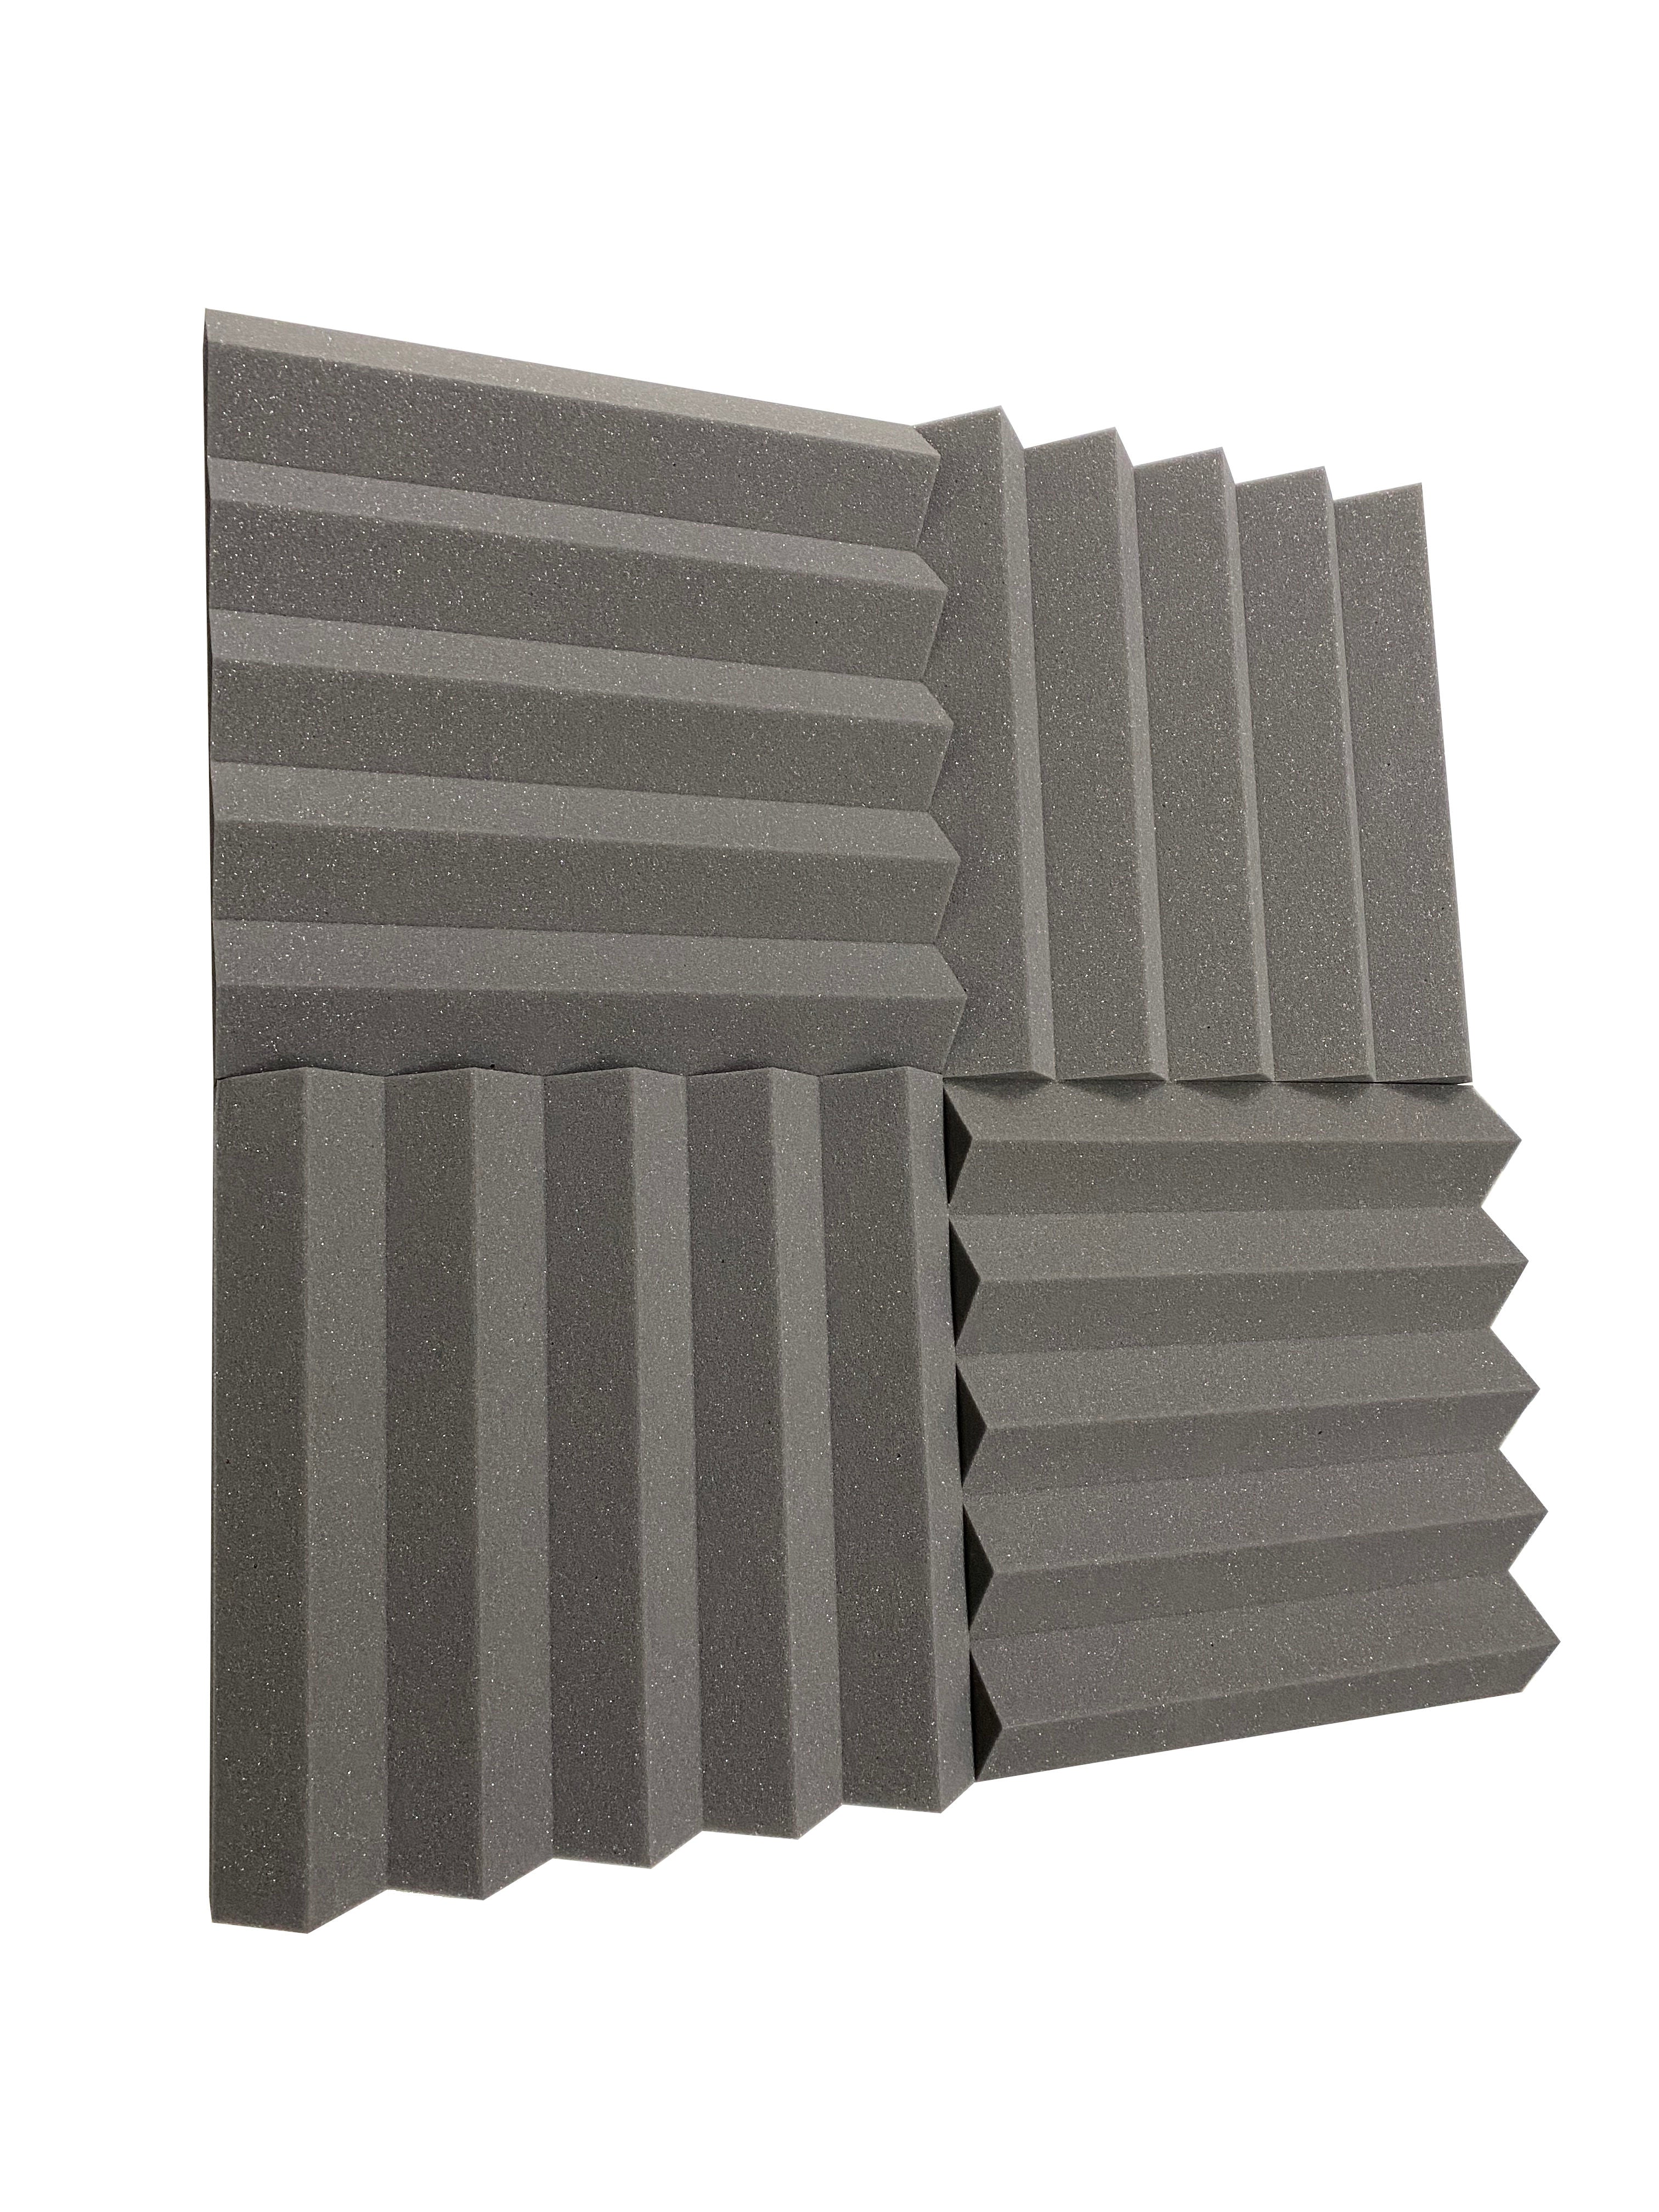 Kaufen mittelgrau Wedge PRO 15&quot; Acoustic Studio Foam Tile Pack - 24 Tiles, 3.48qm Coverage